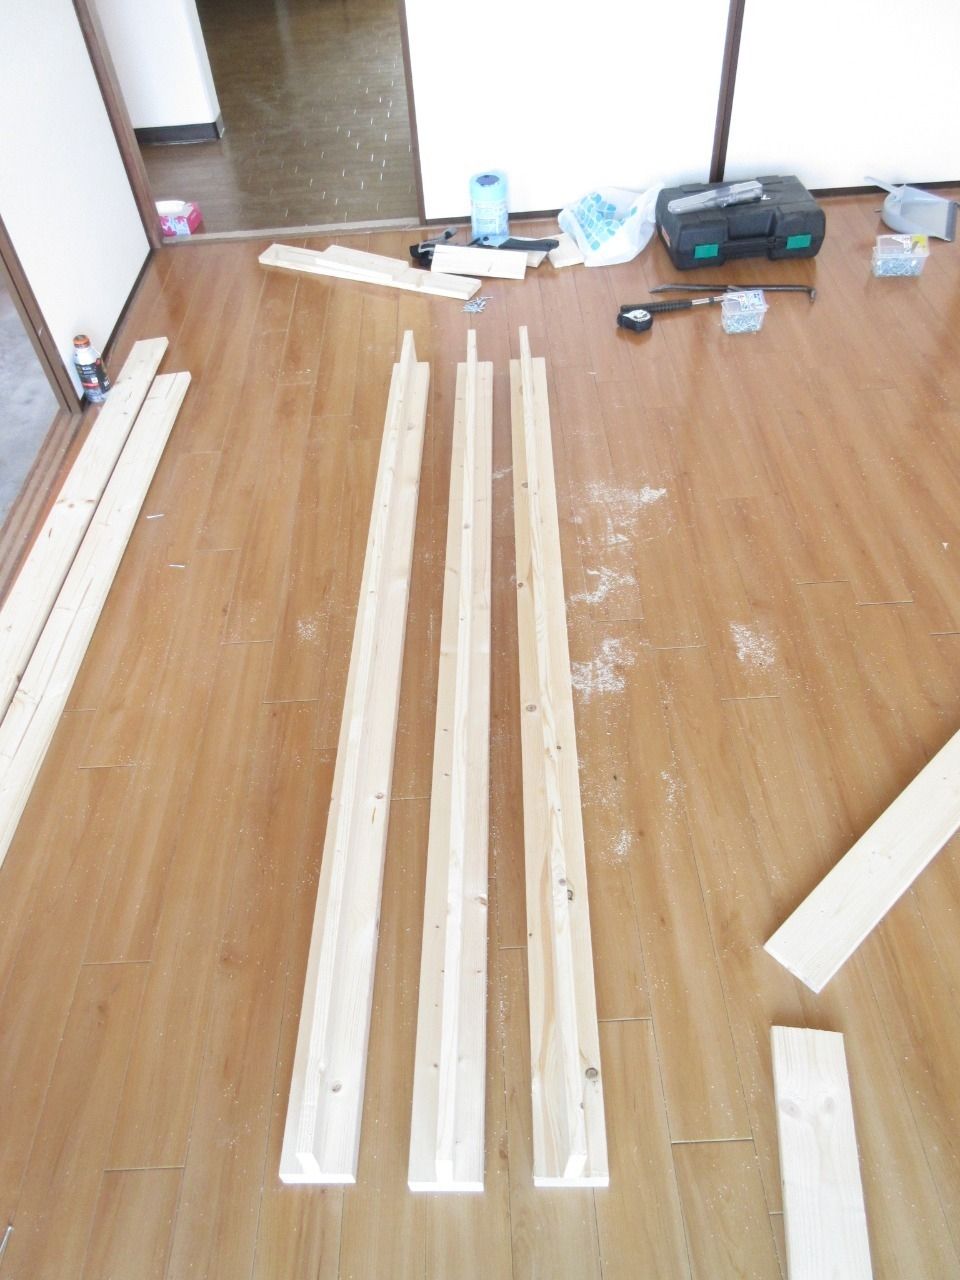 写真では分かりづらいので申し訳ないのですが、天板の木材を以前のモノよりも少し厚くしました。
改善前は1×4材（ワンバイフォー）で、改善後は2×4材（ツーバイフォー）を使用しました。